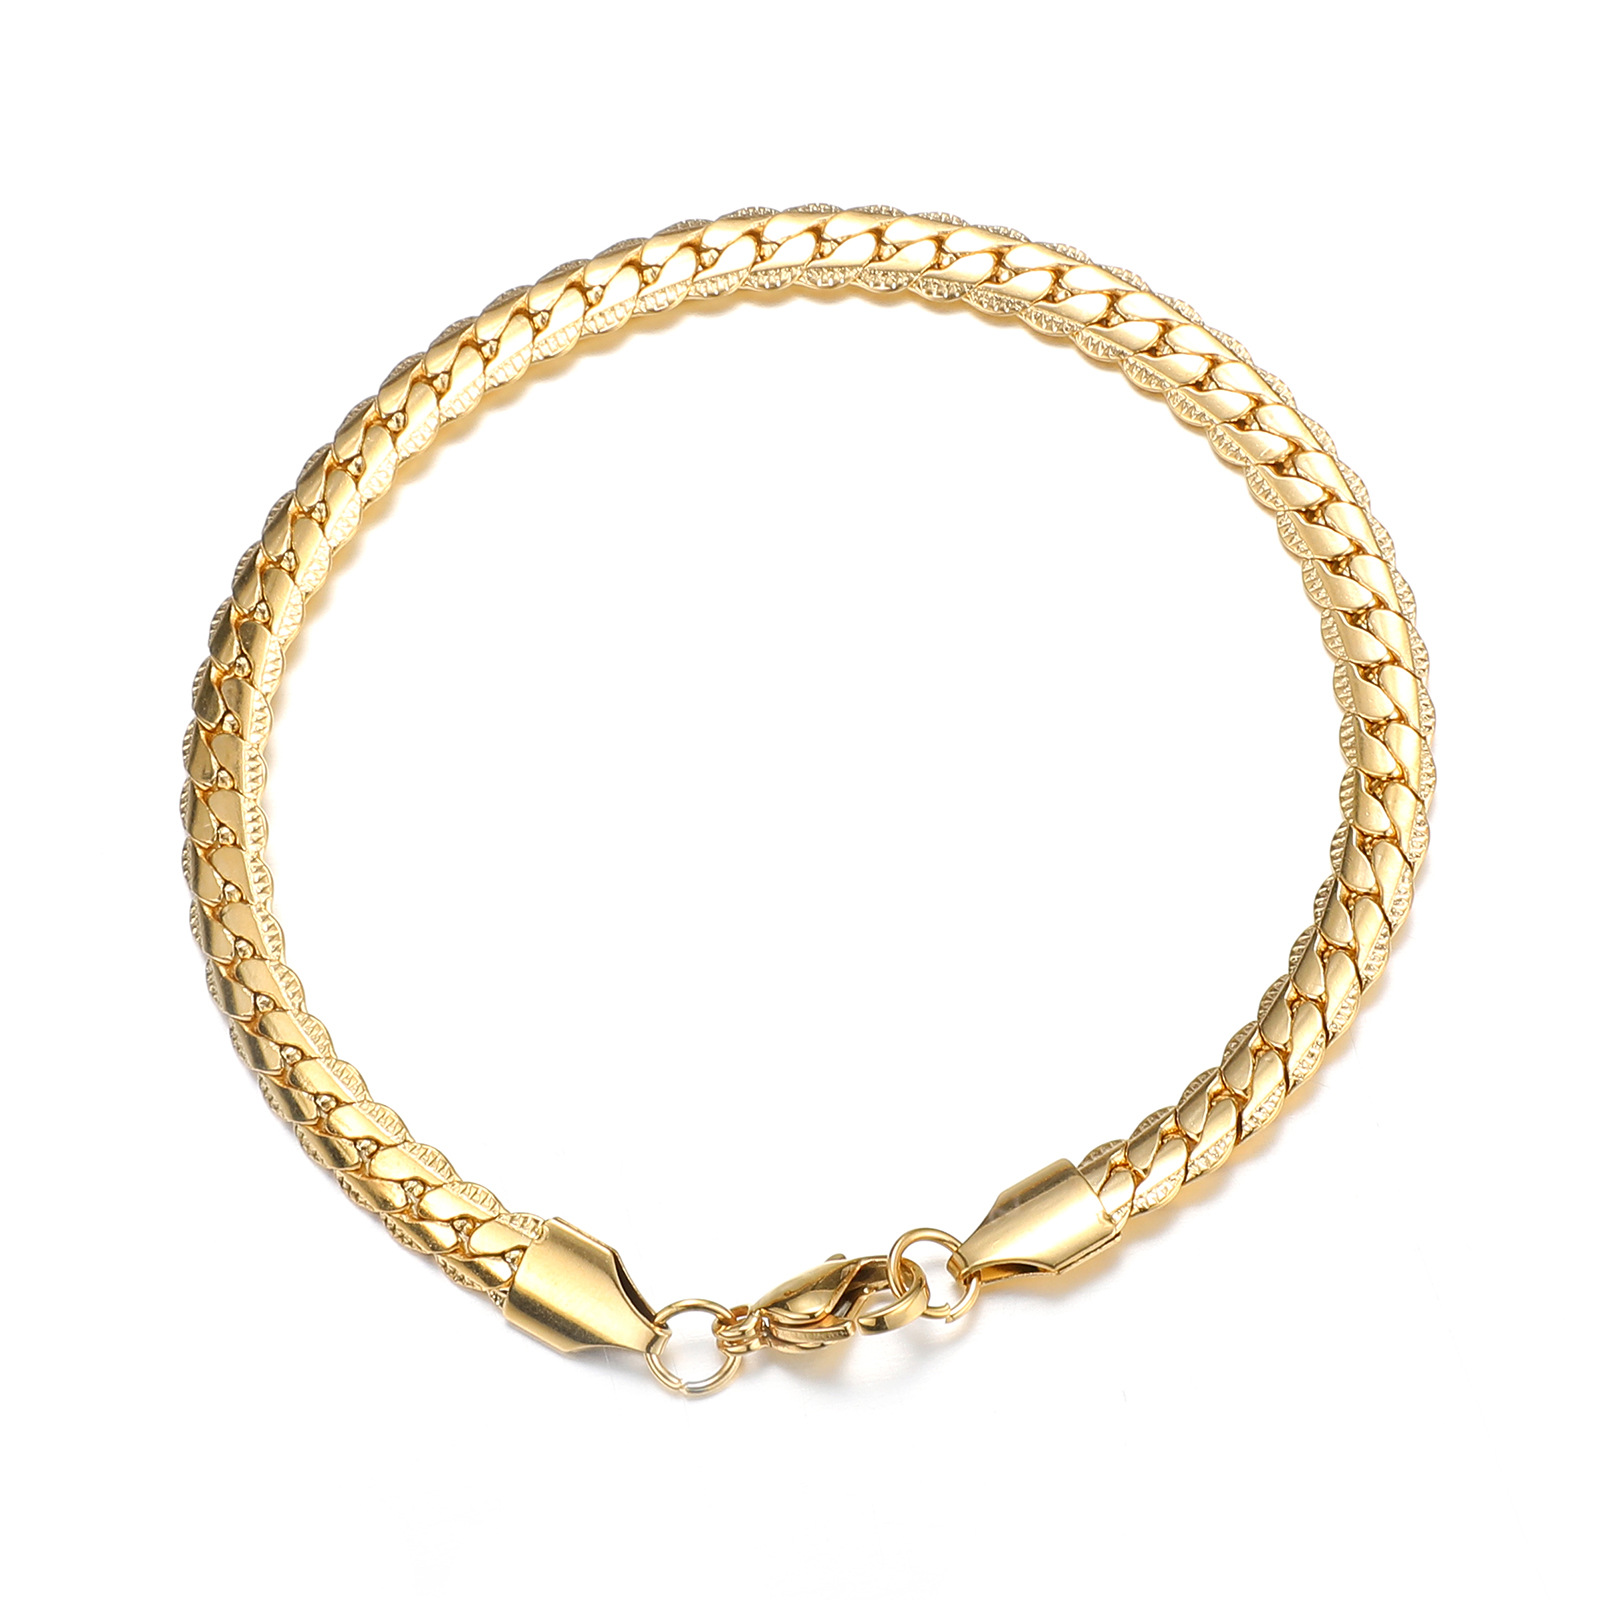 Gold bracelet (21cm long) Width 5mm